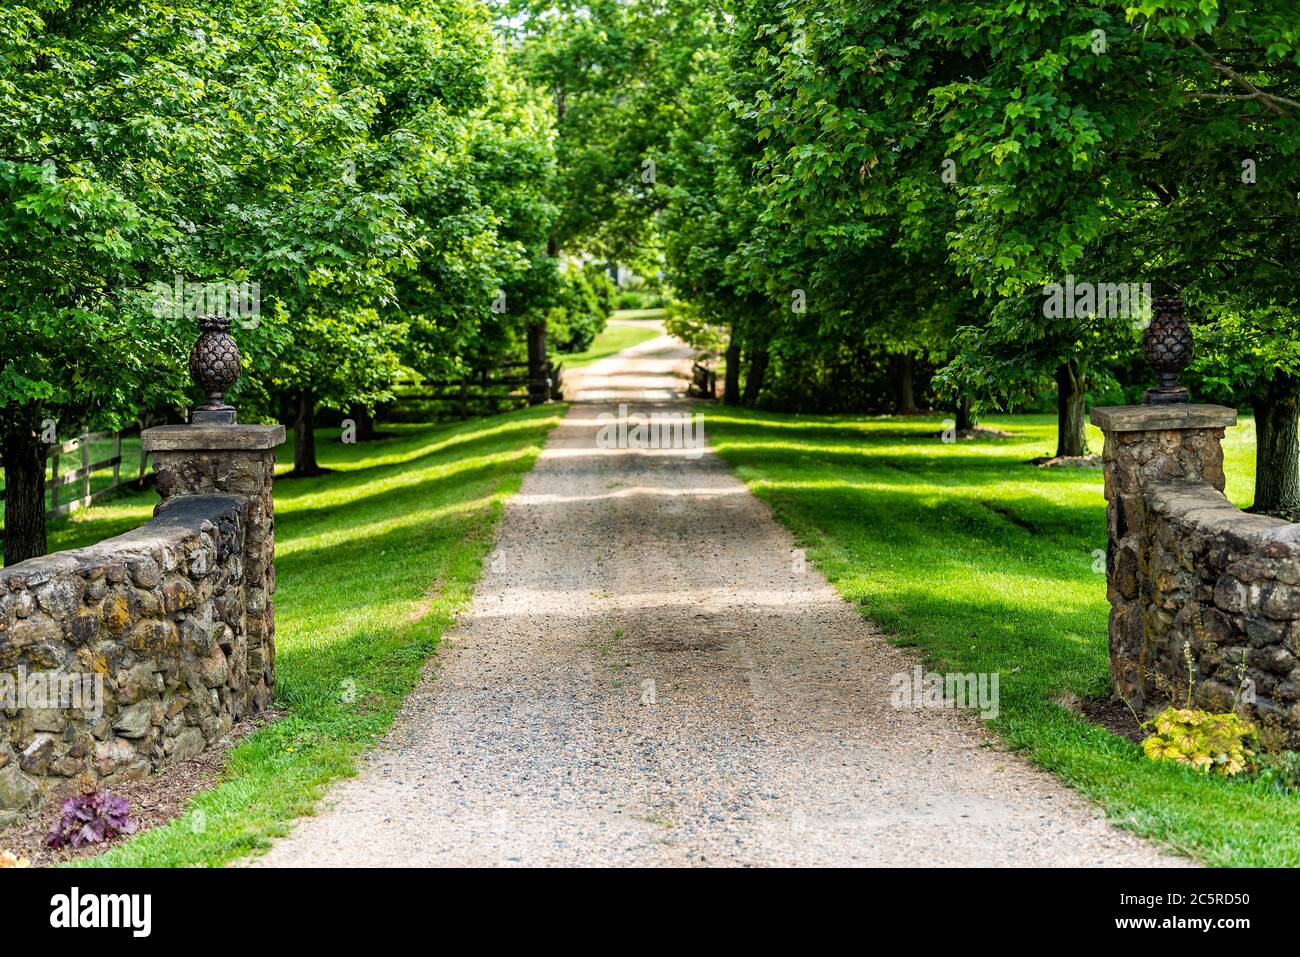 Entrée ouverte et fermée avec allée dans la campagne rurale dans le domaine de Virginie avec clôture en pierre et chemin de terre en gravier rue avec arbres verts luxuriants en s. Banque D'Images